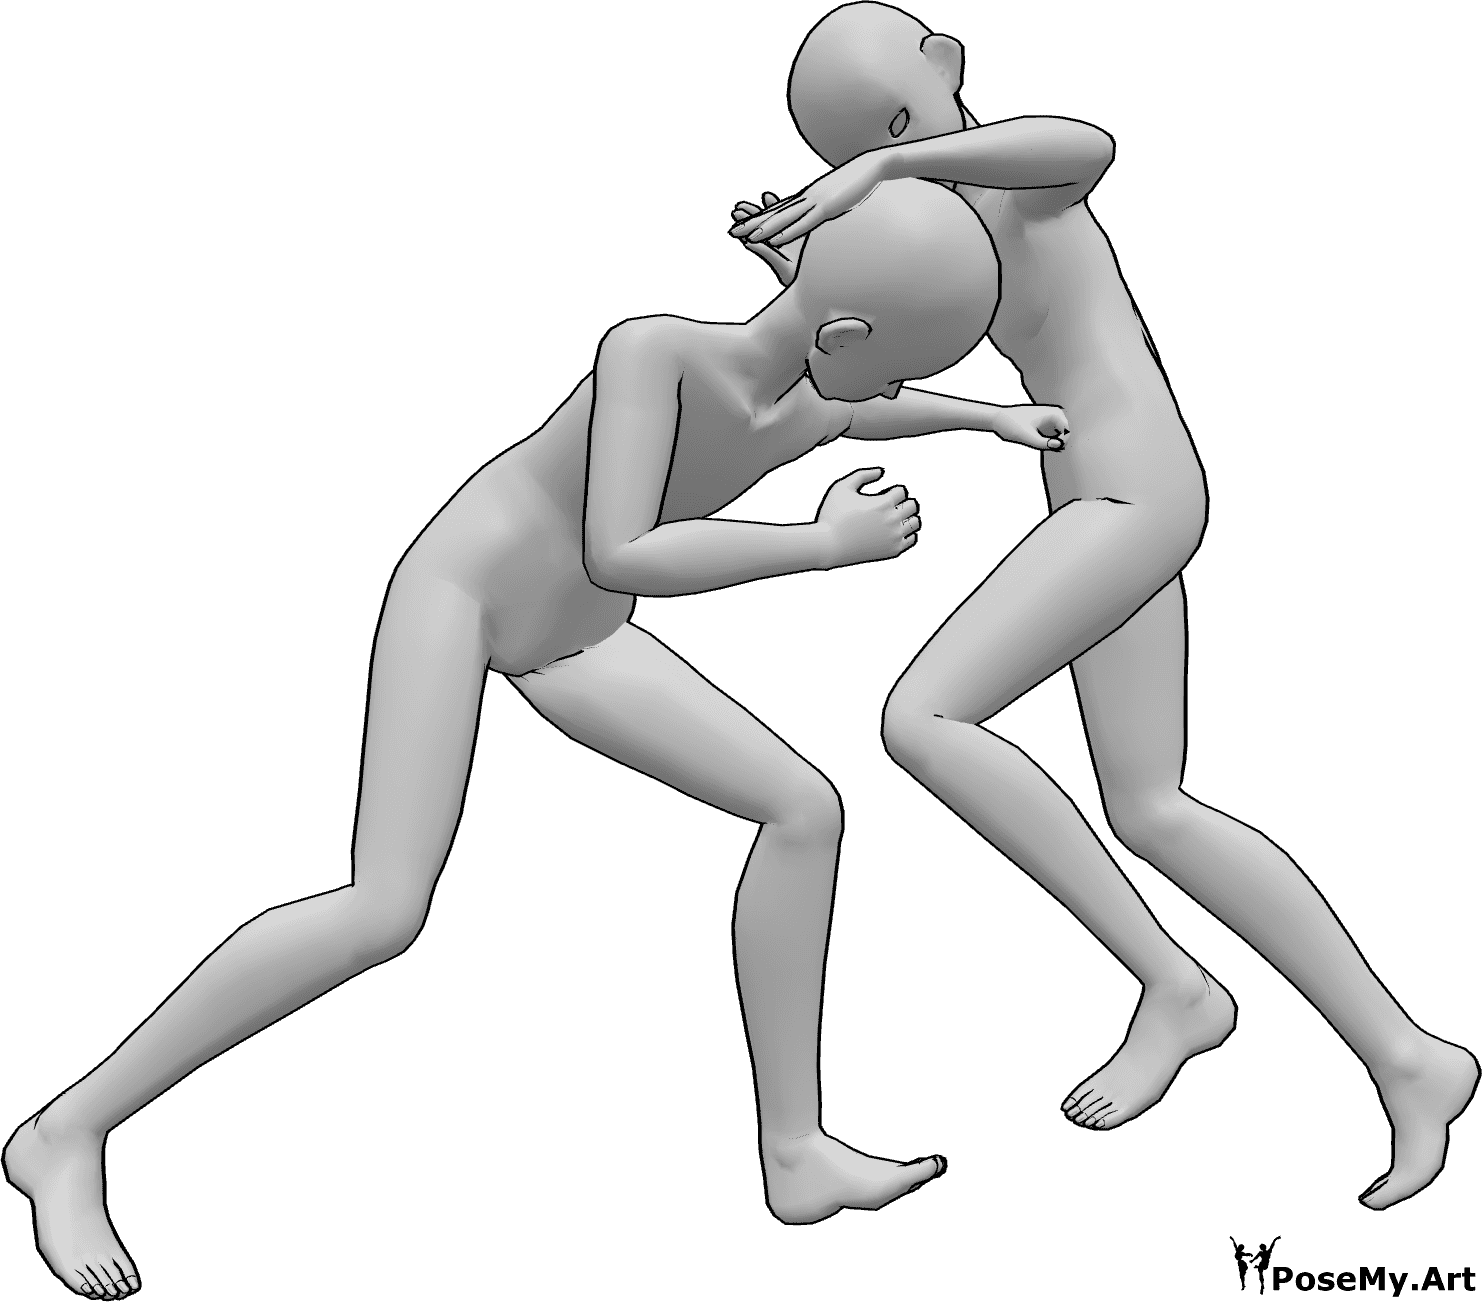 Referencia de poses- Postura de lucha anime - Dos machos anime se pelean, uno golpea al otro en el estómago, el otro le da una patada en la cabeza con la rodilla